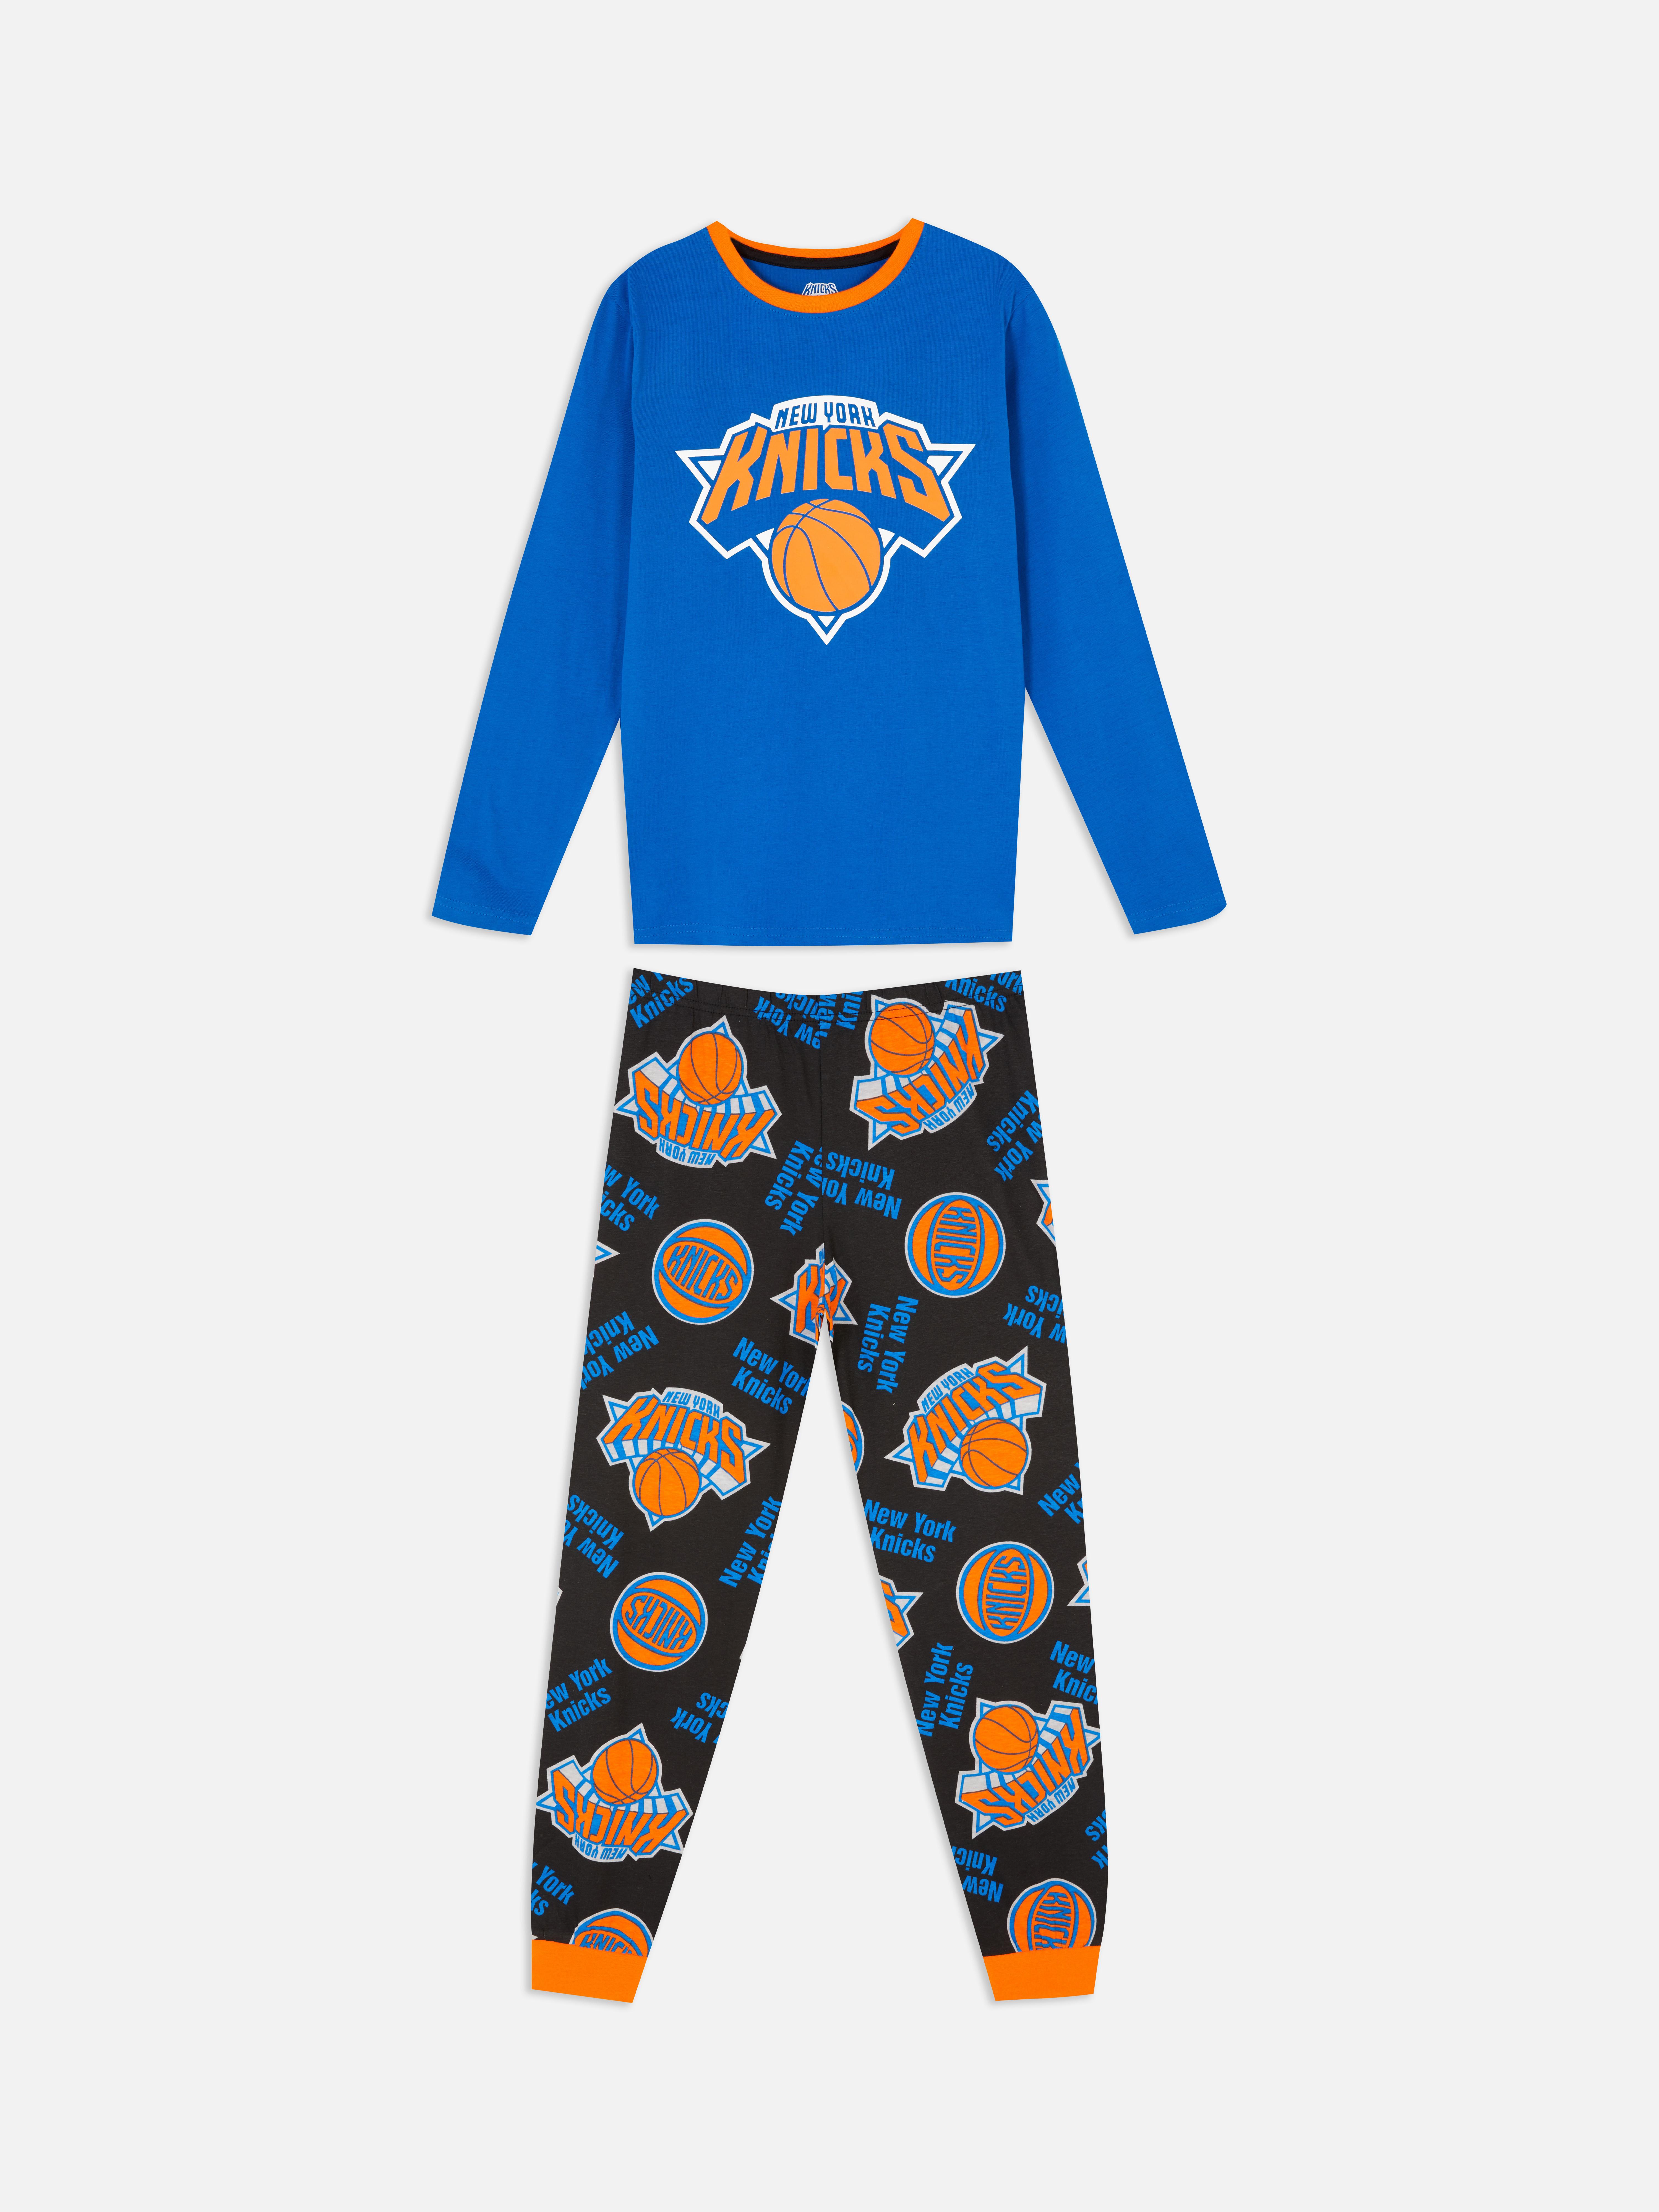 Pijama de los New York de la NBA | Pijamas para niños | Moda para niños | Ropa para niños | Todos los productos Primark | Primark España